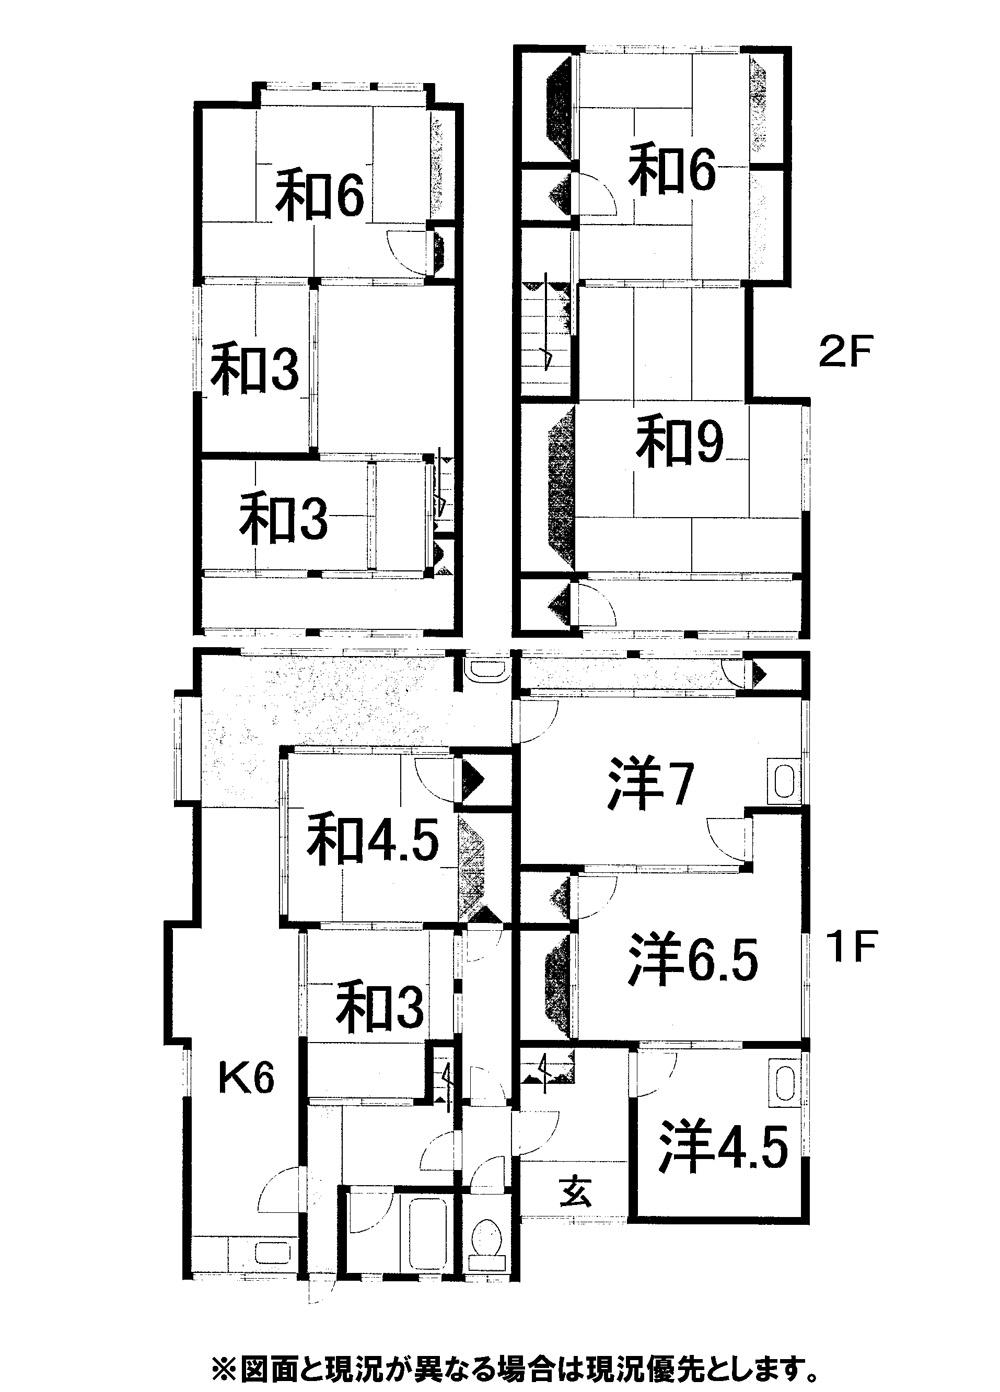 Floor plan. 4.9 million yen, 10K, Land area 180.05 sq m , Building area 160.72 sq m 7DK